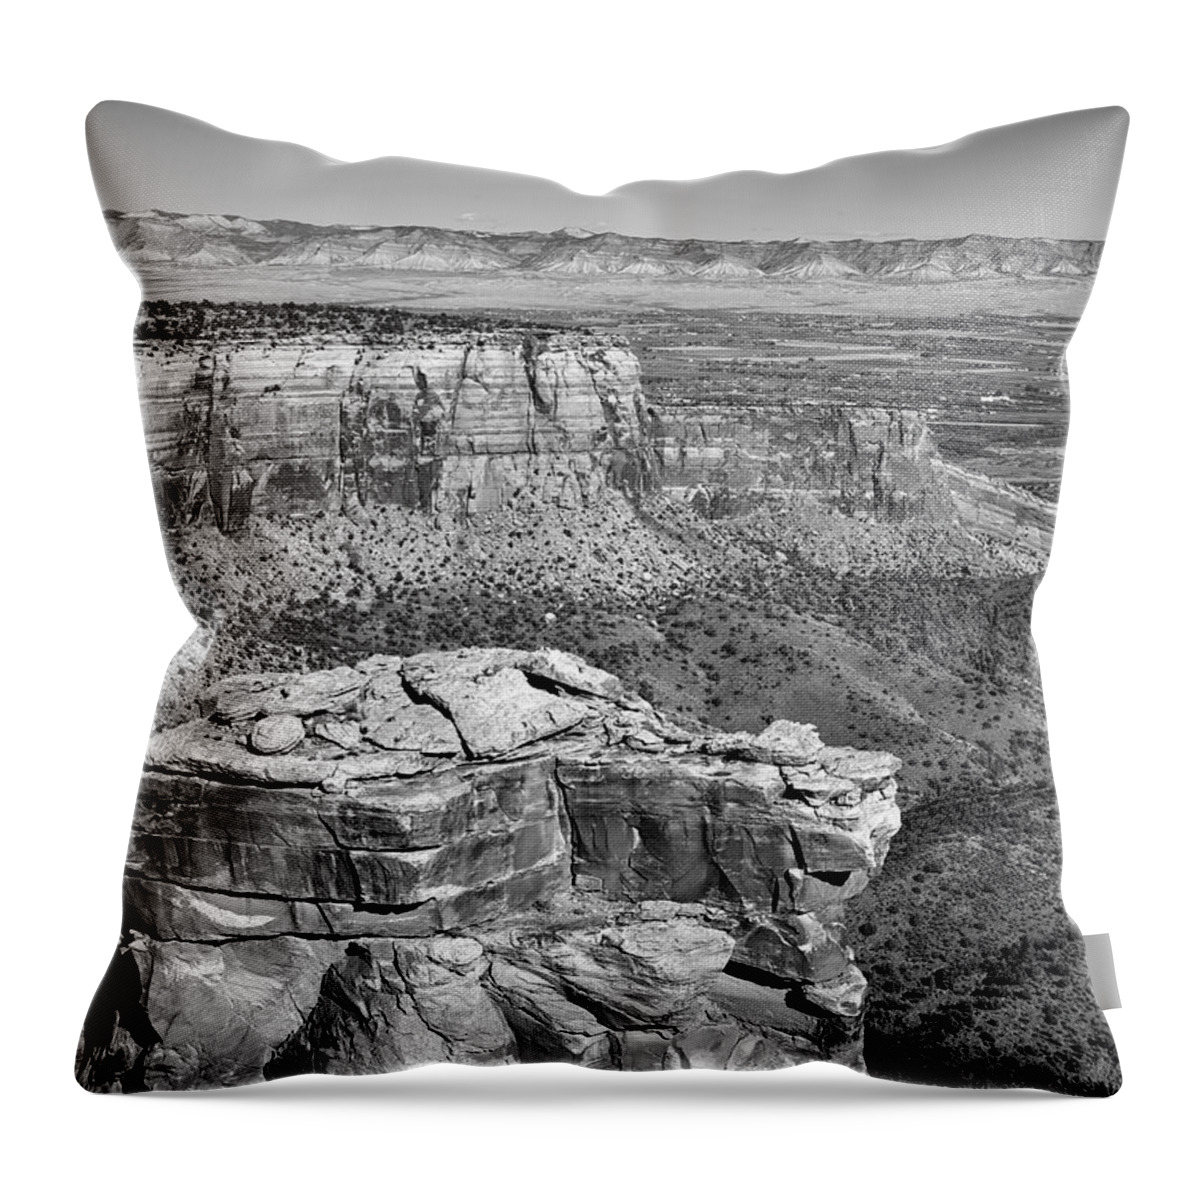 Colorado Throw Pillow featuring the photograph Scenic Colorado by Mountain Dreams